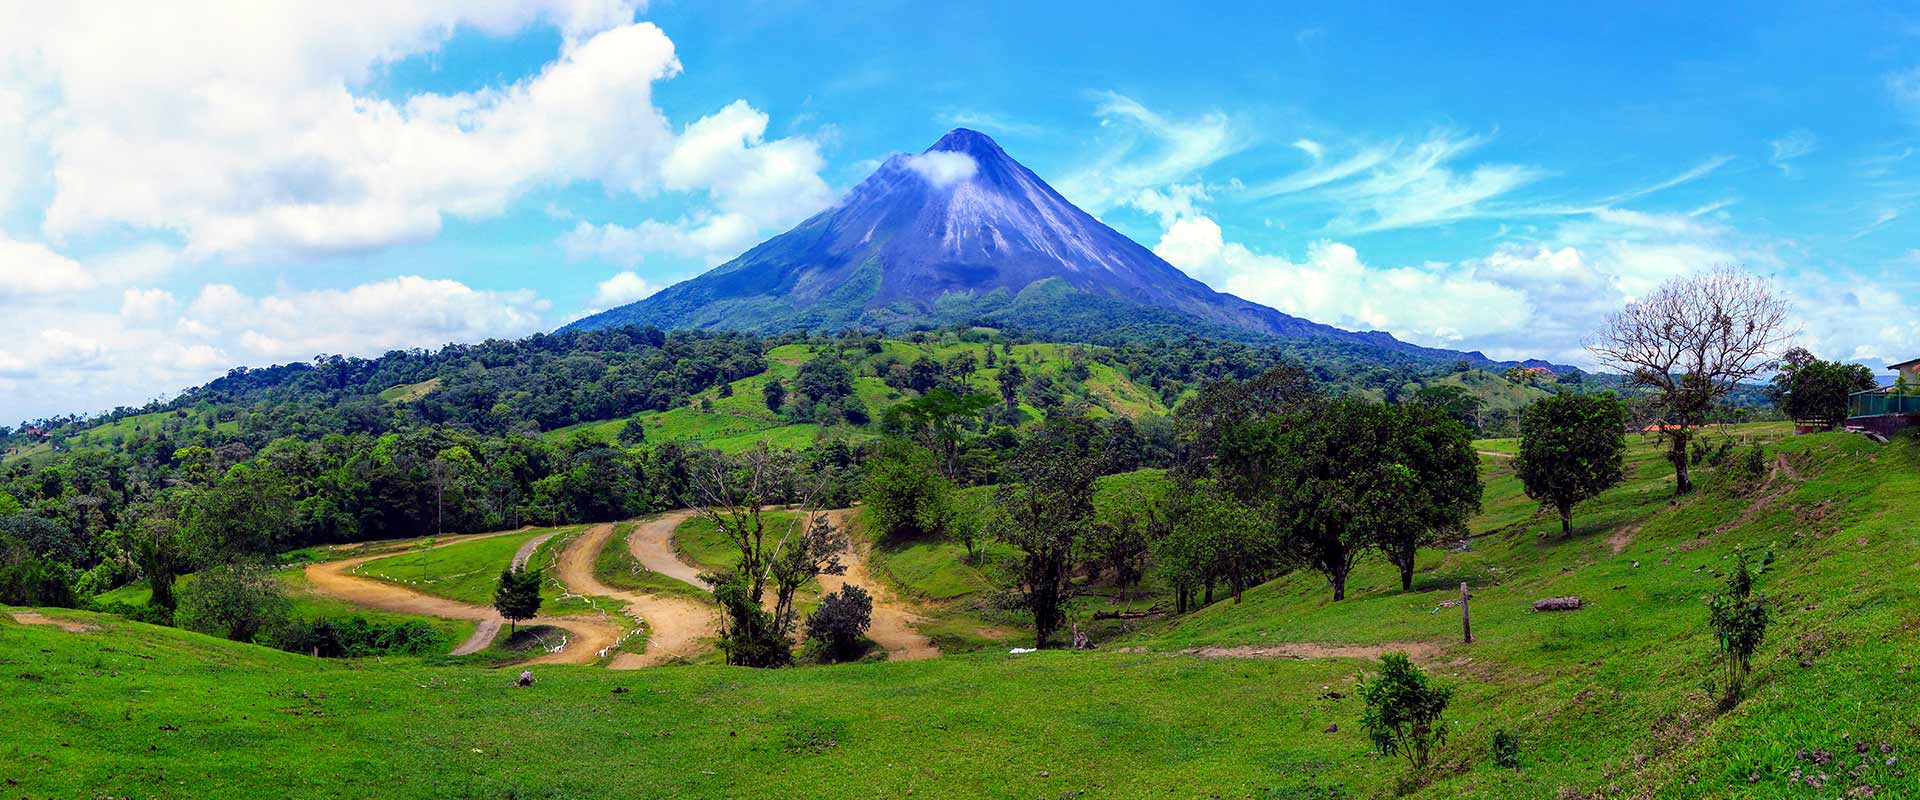 CR Rundreise Höhepunkte Costa Ricas 11 Tage Slider 1